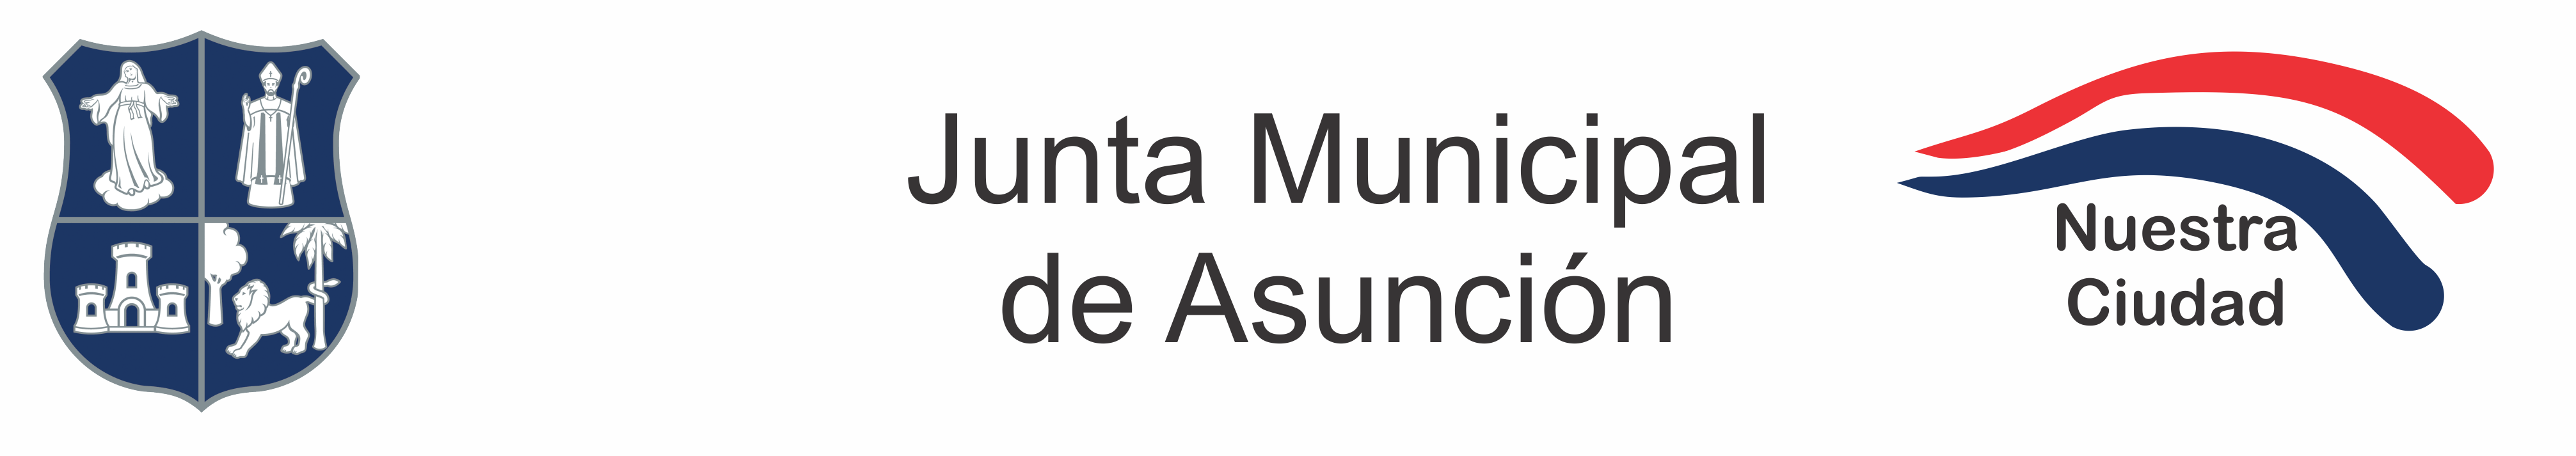 Junta Municipal de Asuncion